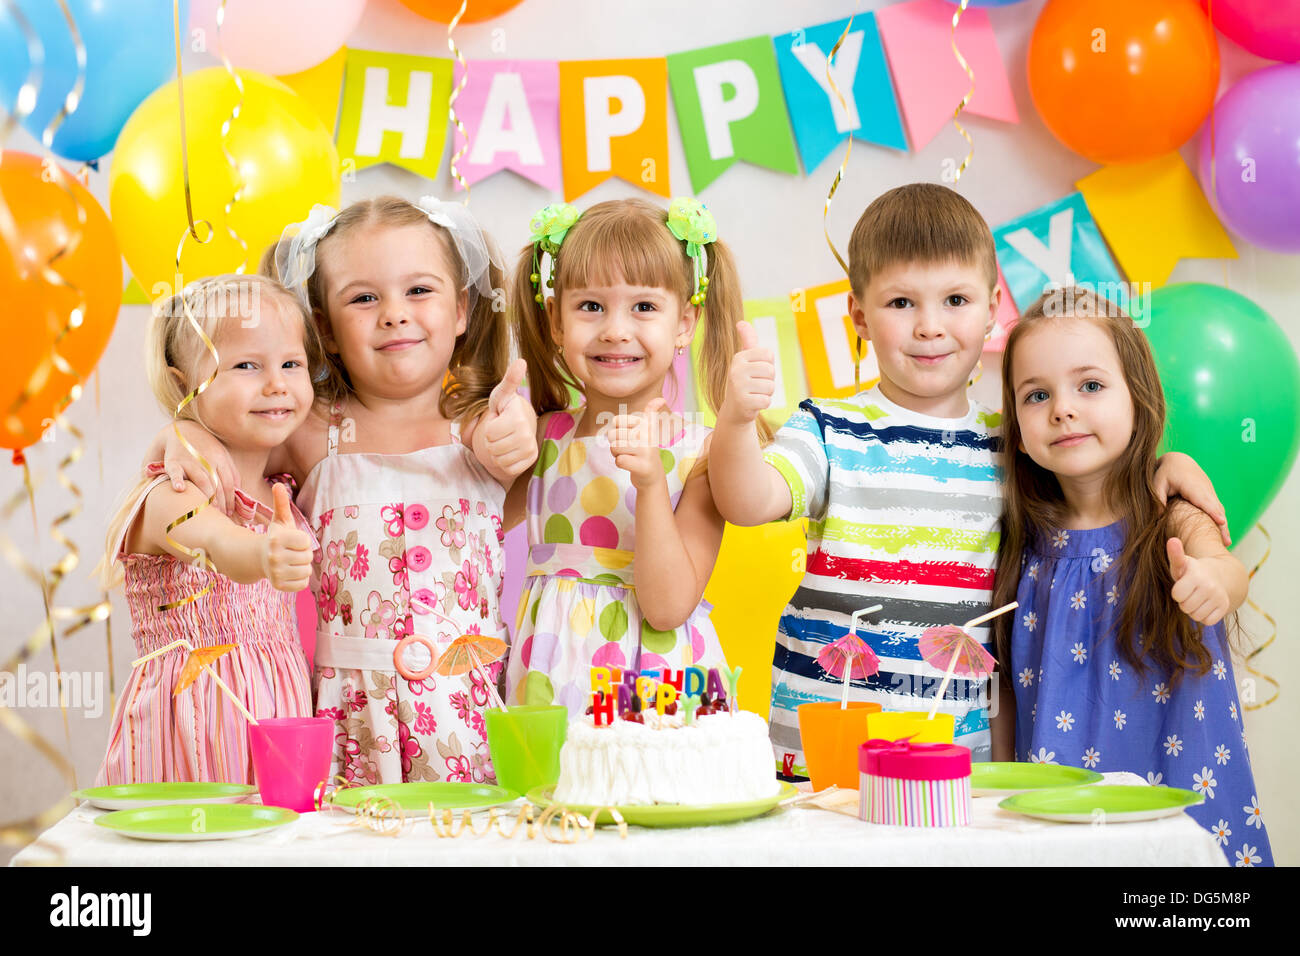 children celebrating birthday party Stock Photo